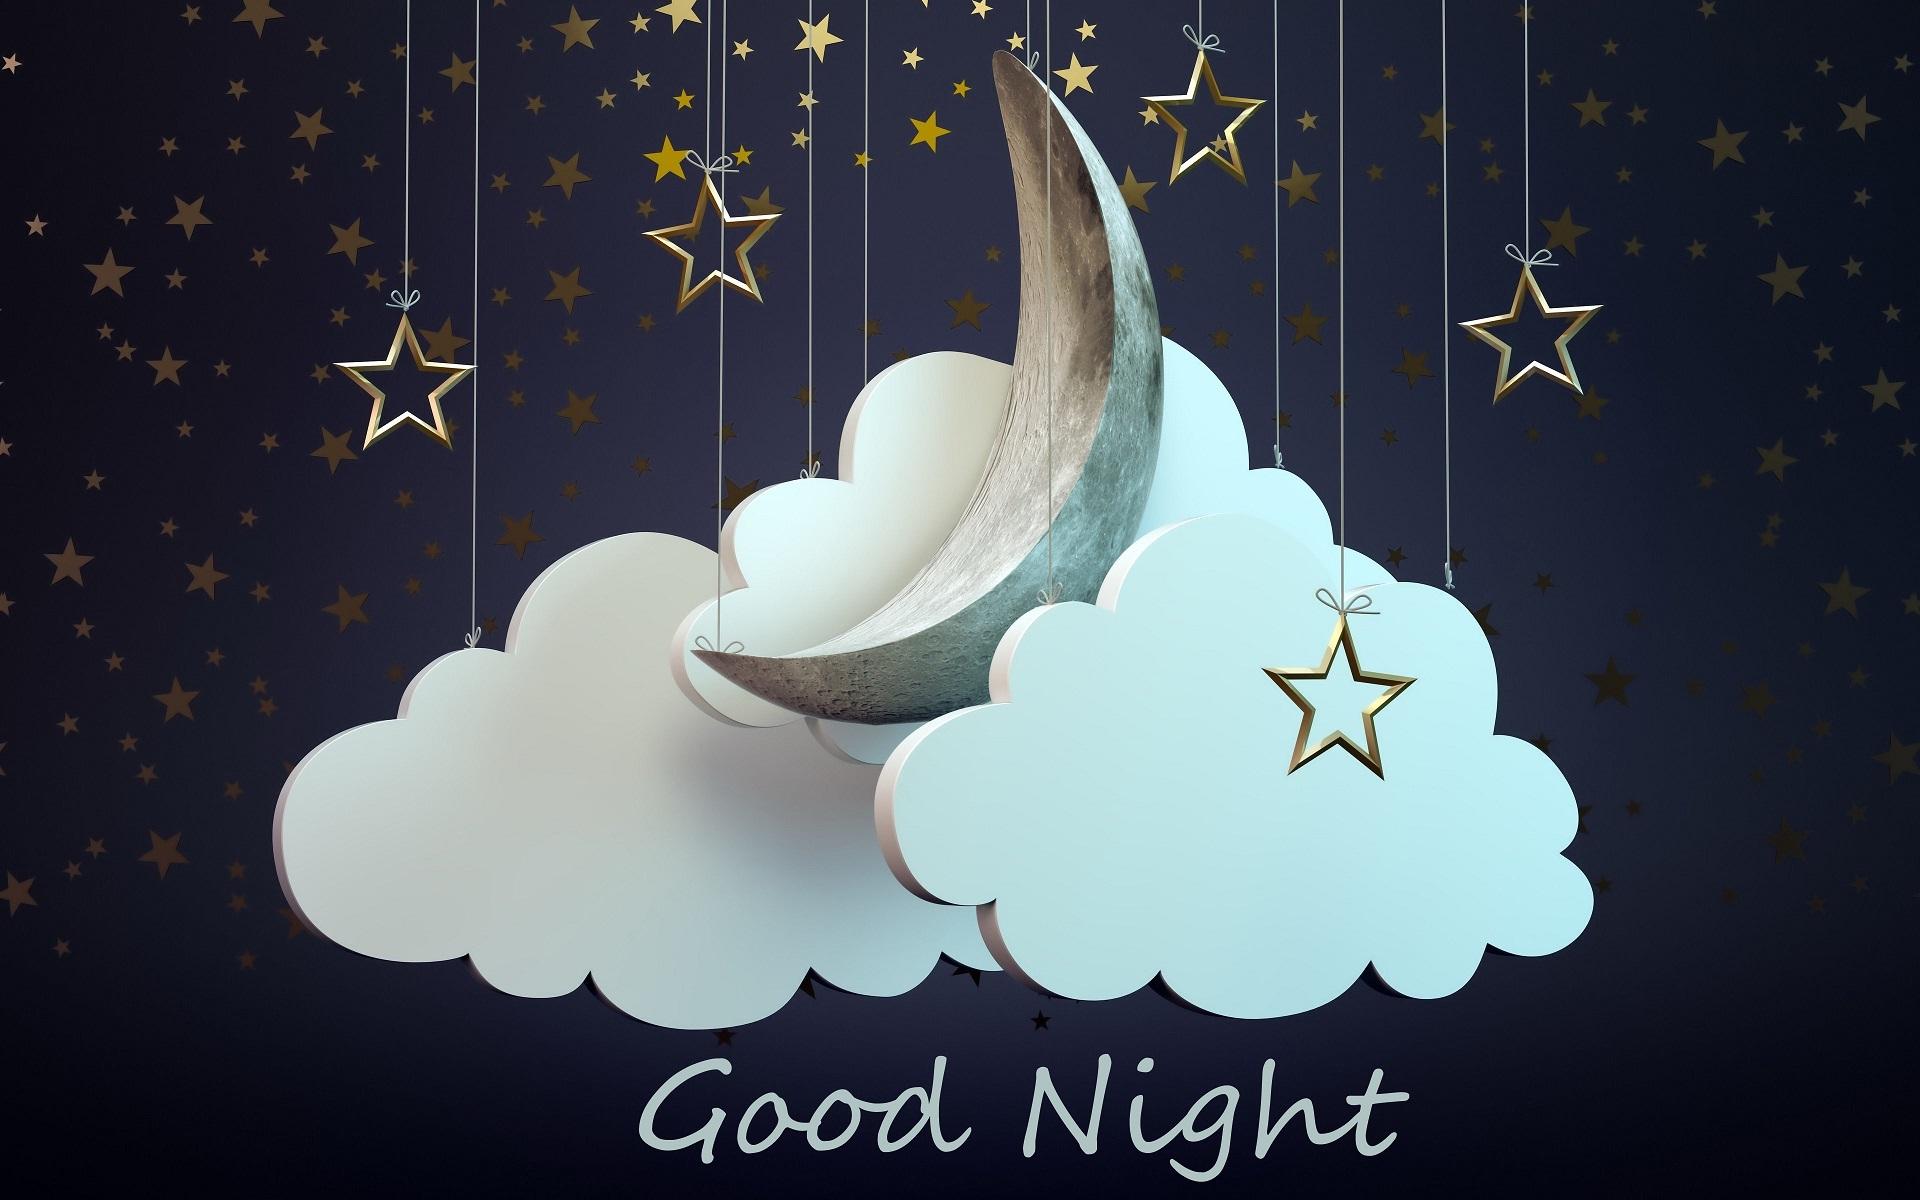 Good night friends wishes HD wallpaper HD Good night